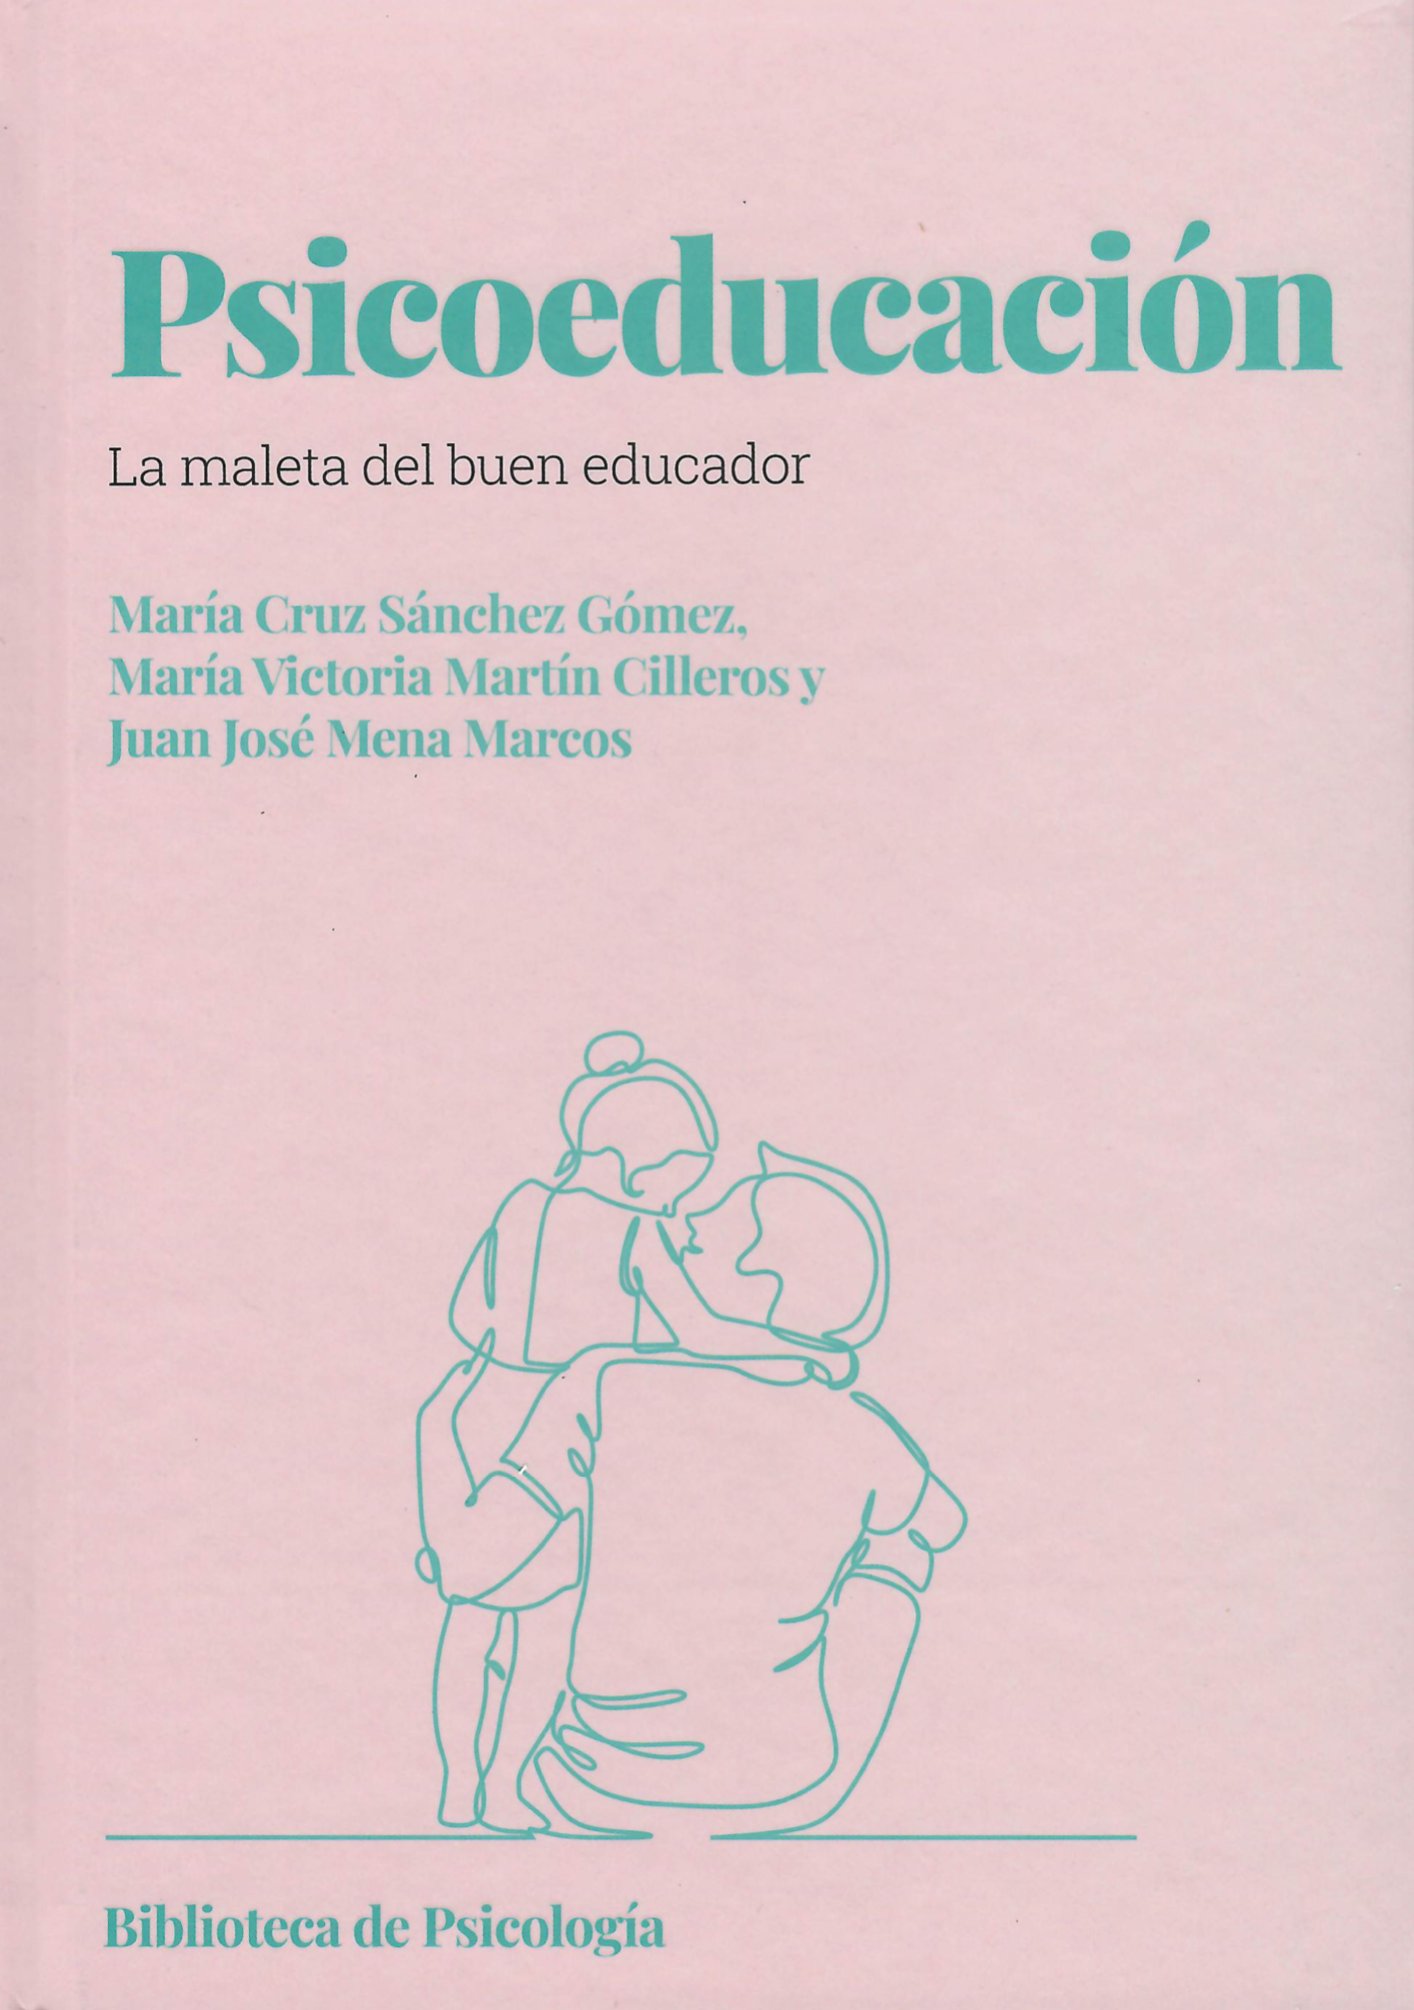 Imagen de portada del libro Psicoeducación